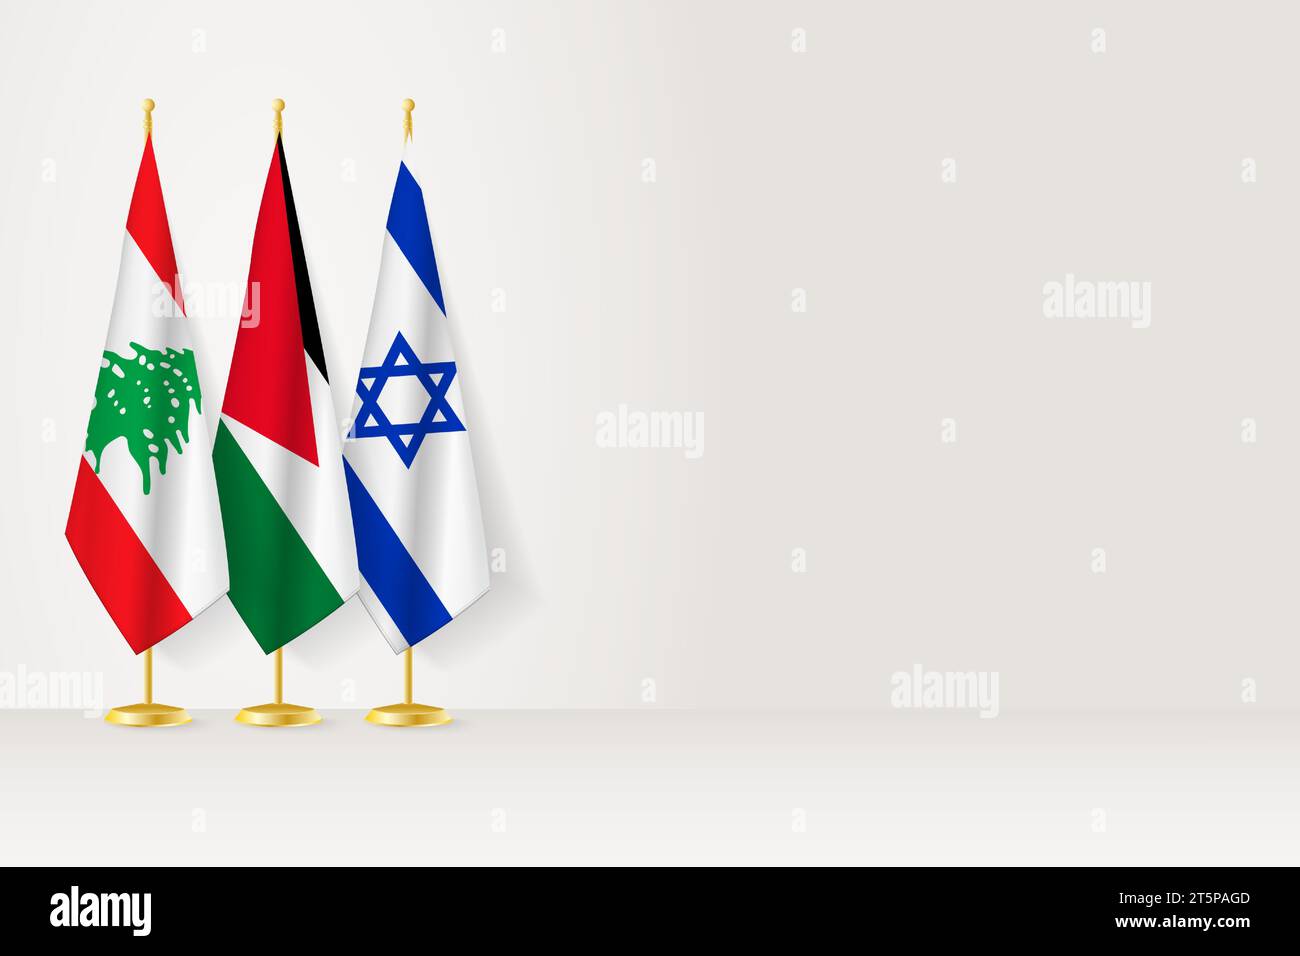 Les drapeaux du Liban, de la Jordanie et d'Israël sont alignés sur le mât intérieur. Illustration vectorielle. Illustration de Vecteur